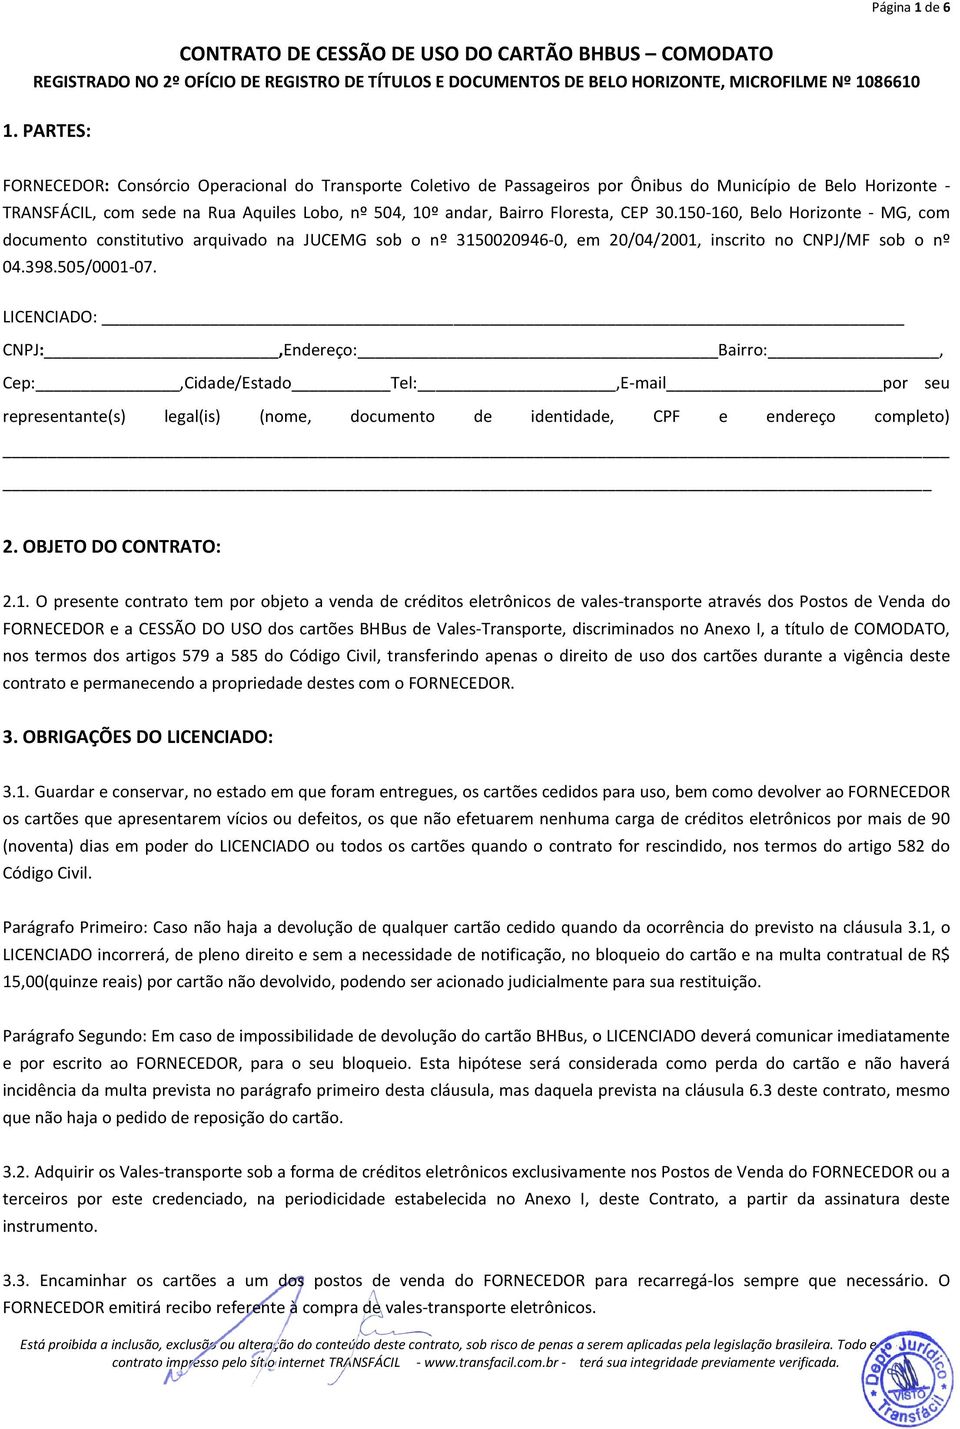 Floresta, CEP 30.150-160, Belo Horizonte - MG, com documento constitutivo arquivado na JUCEMG sob o nº 3150020946-0, em 20/04/2001, inscrito no CNPJ/MF sob o nº 04.398.505/0001-07.